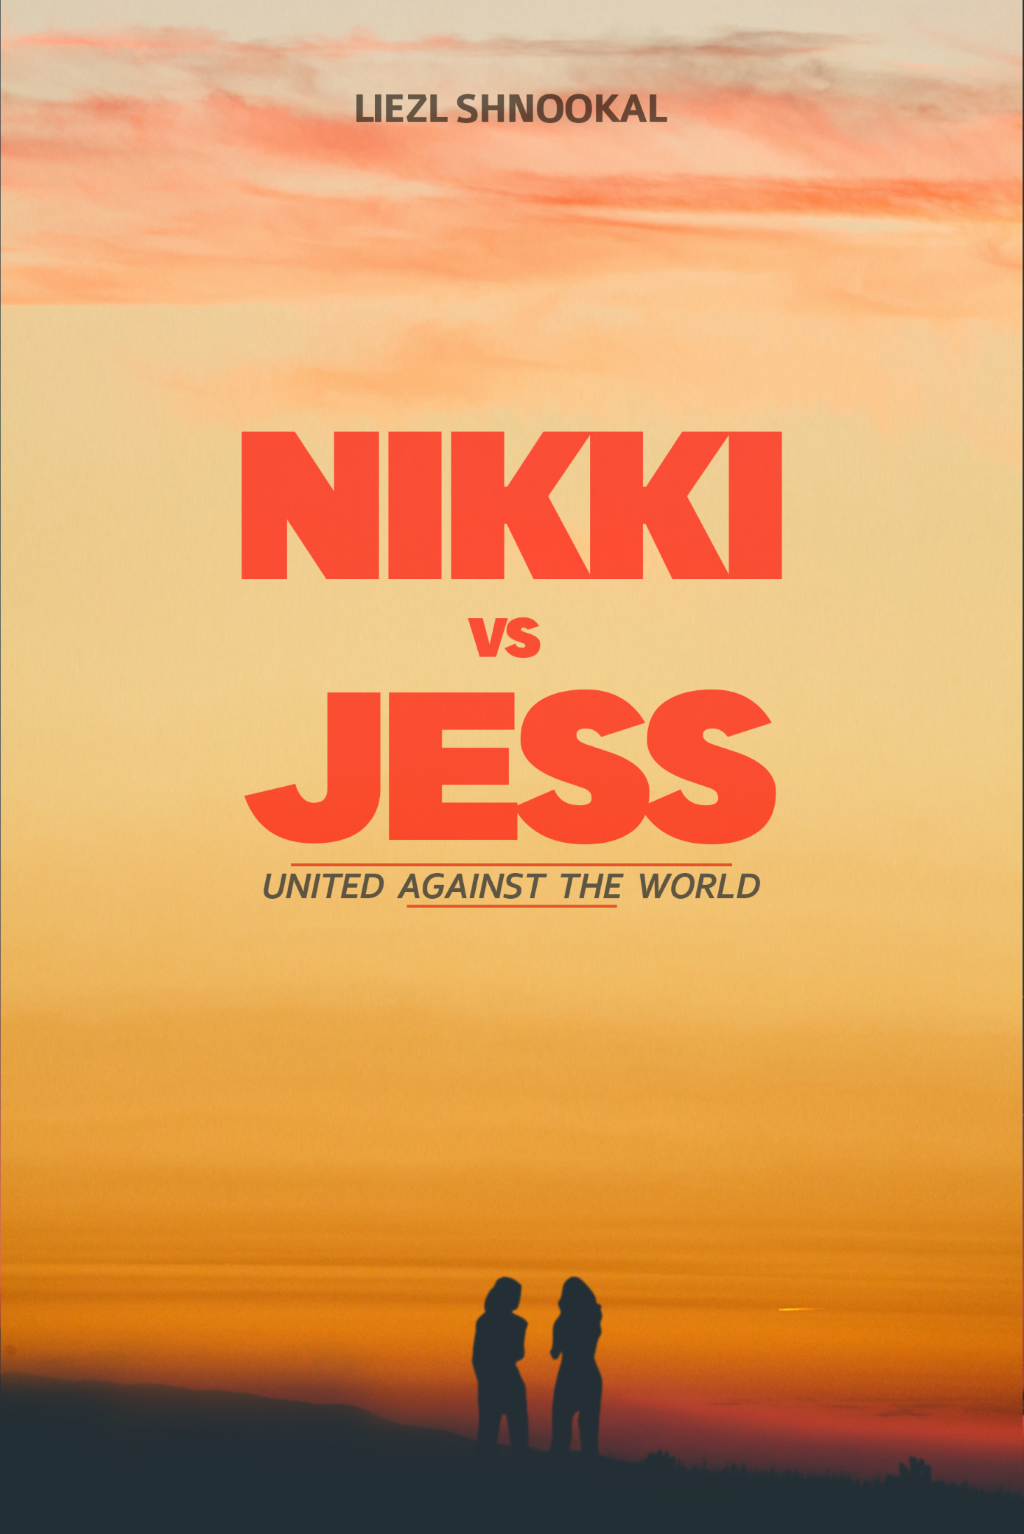 Nikki vs Jess cover